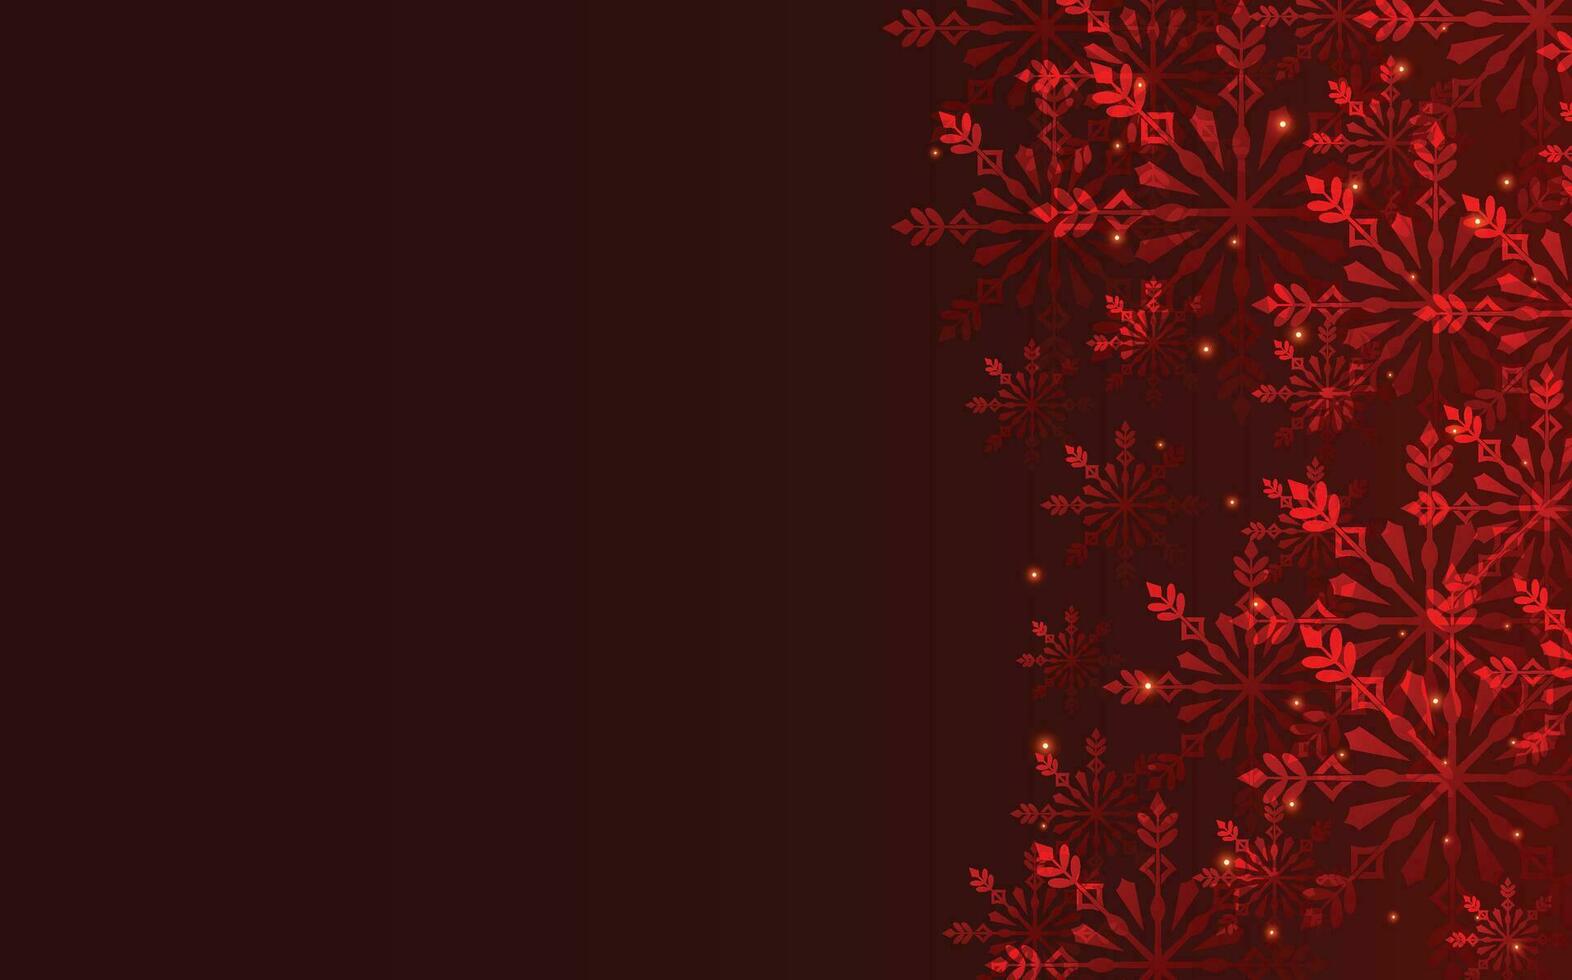 vermelho Natal inverno fundo com flocos de neve vetor